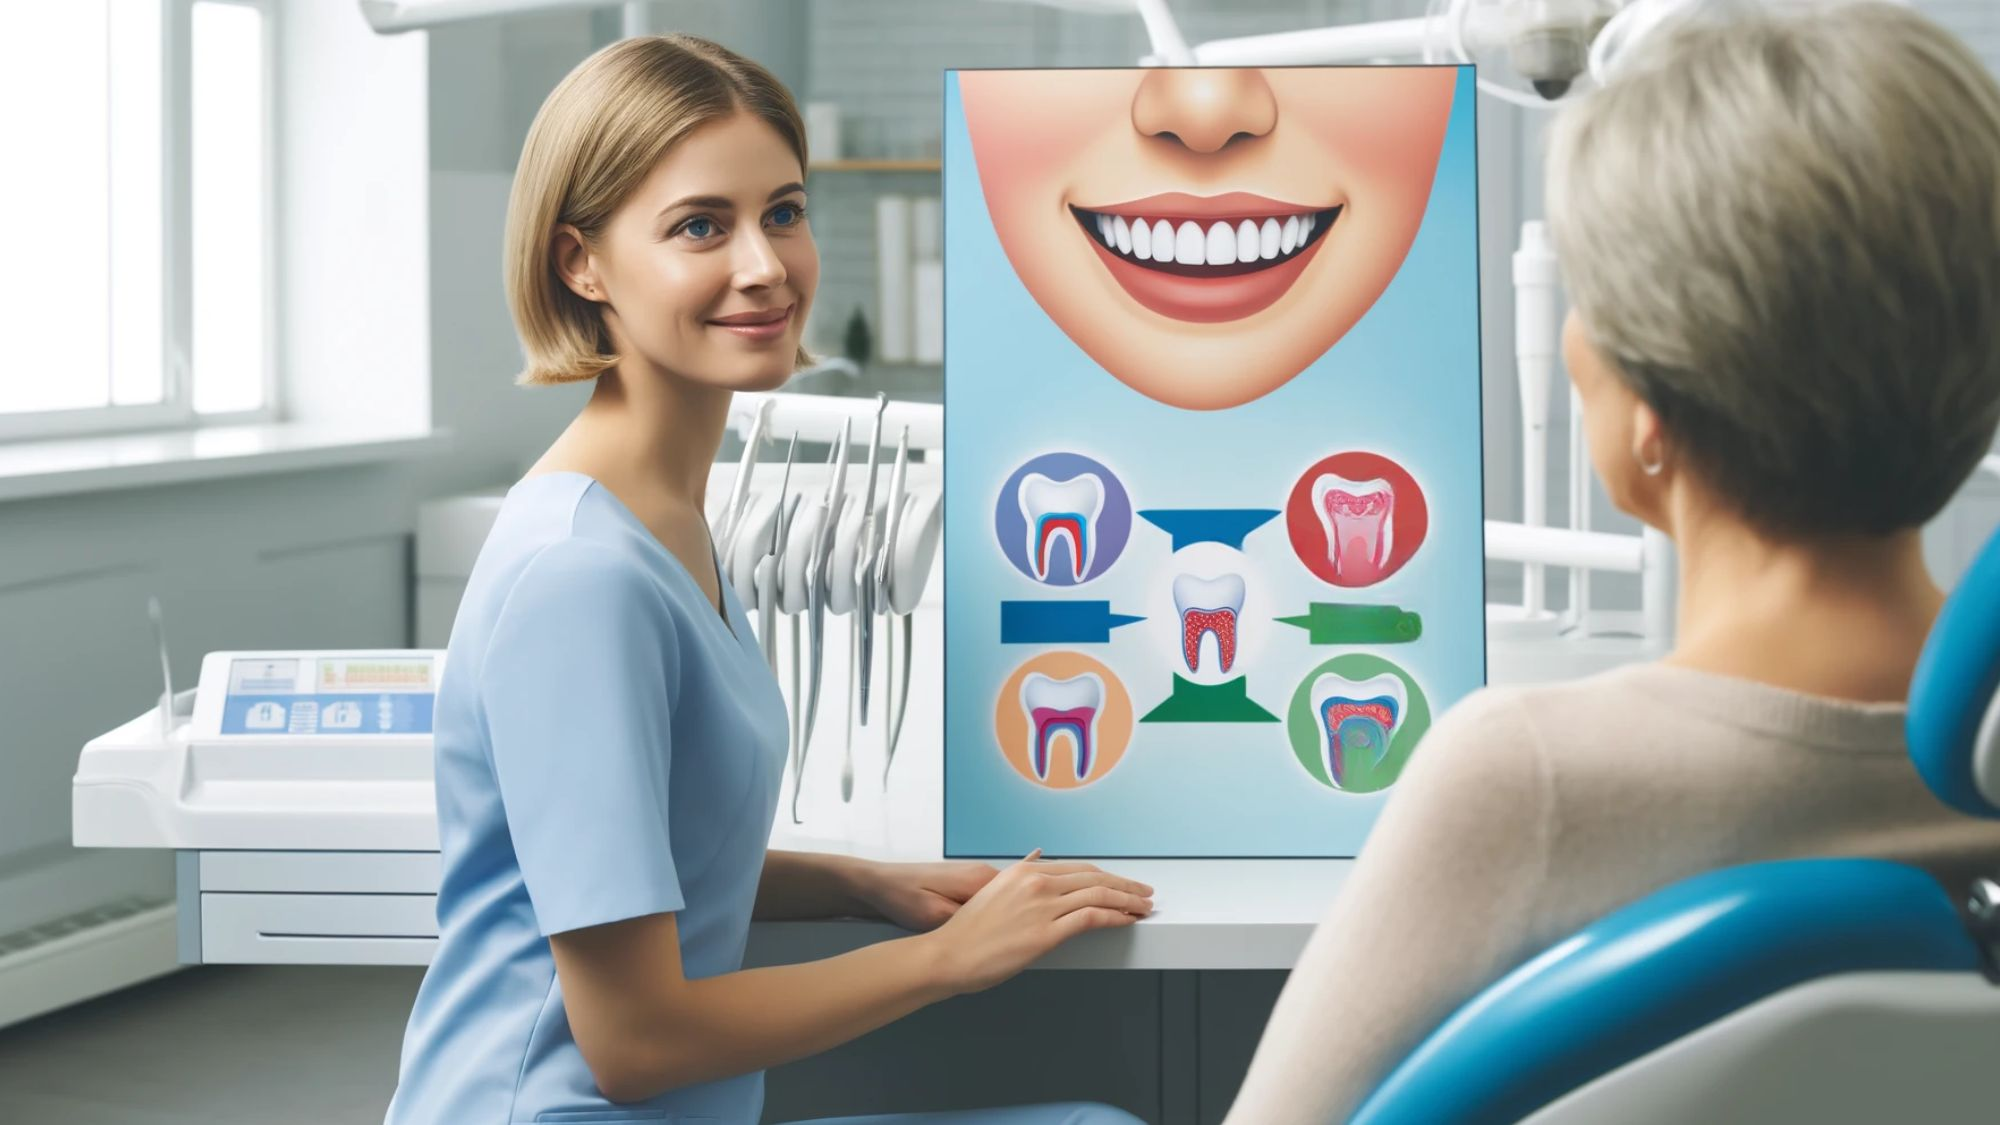 Tannlege forklarer tannbleking til pasient i moderne tannklinikk.